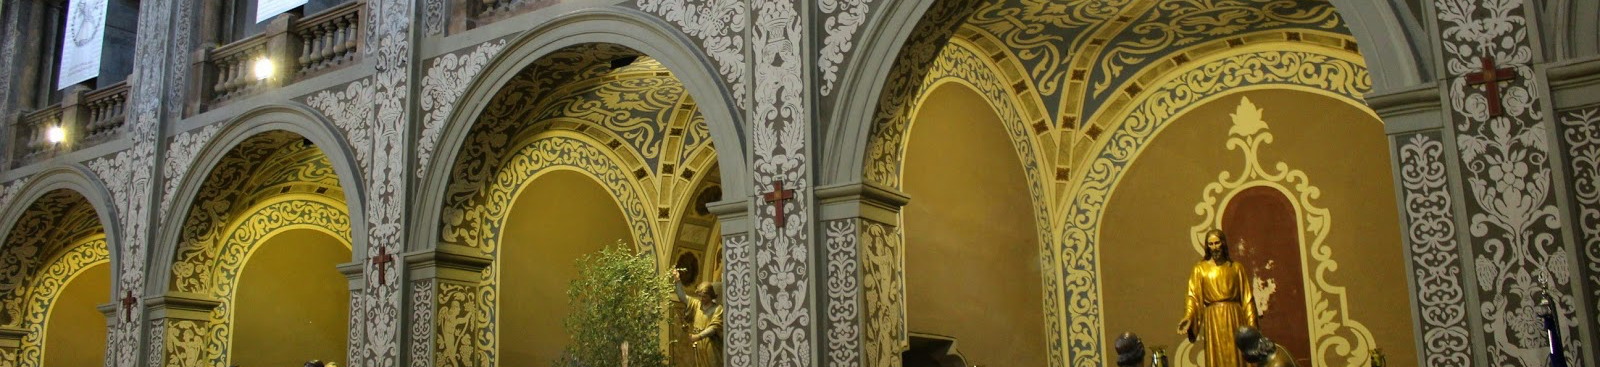 Església de sant Agusti. Interior